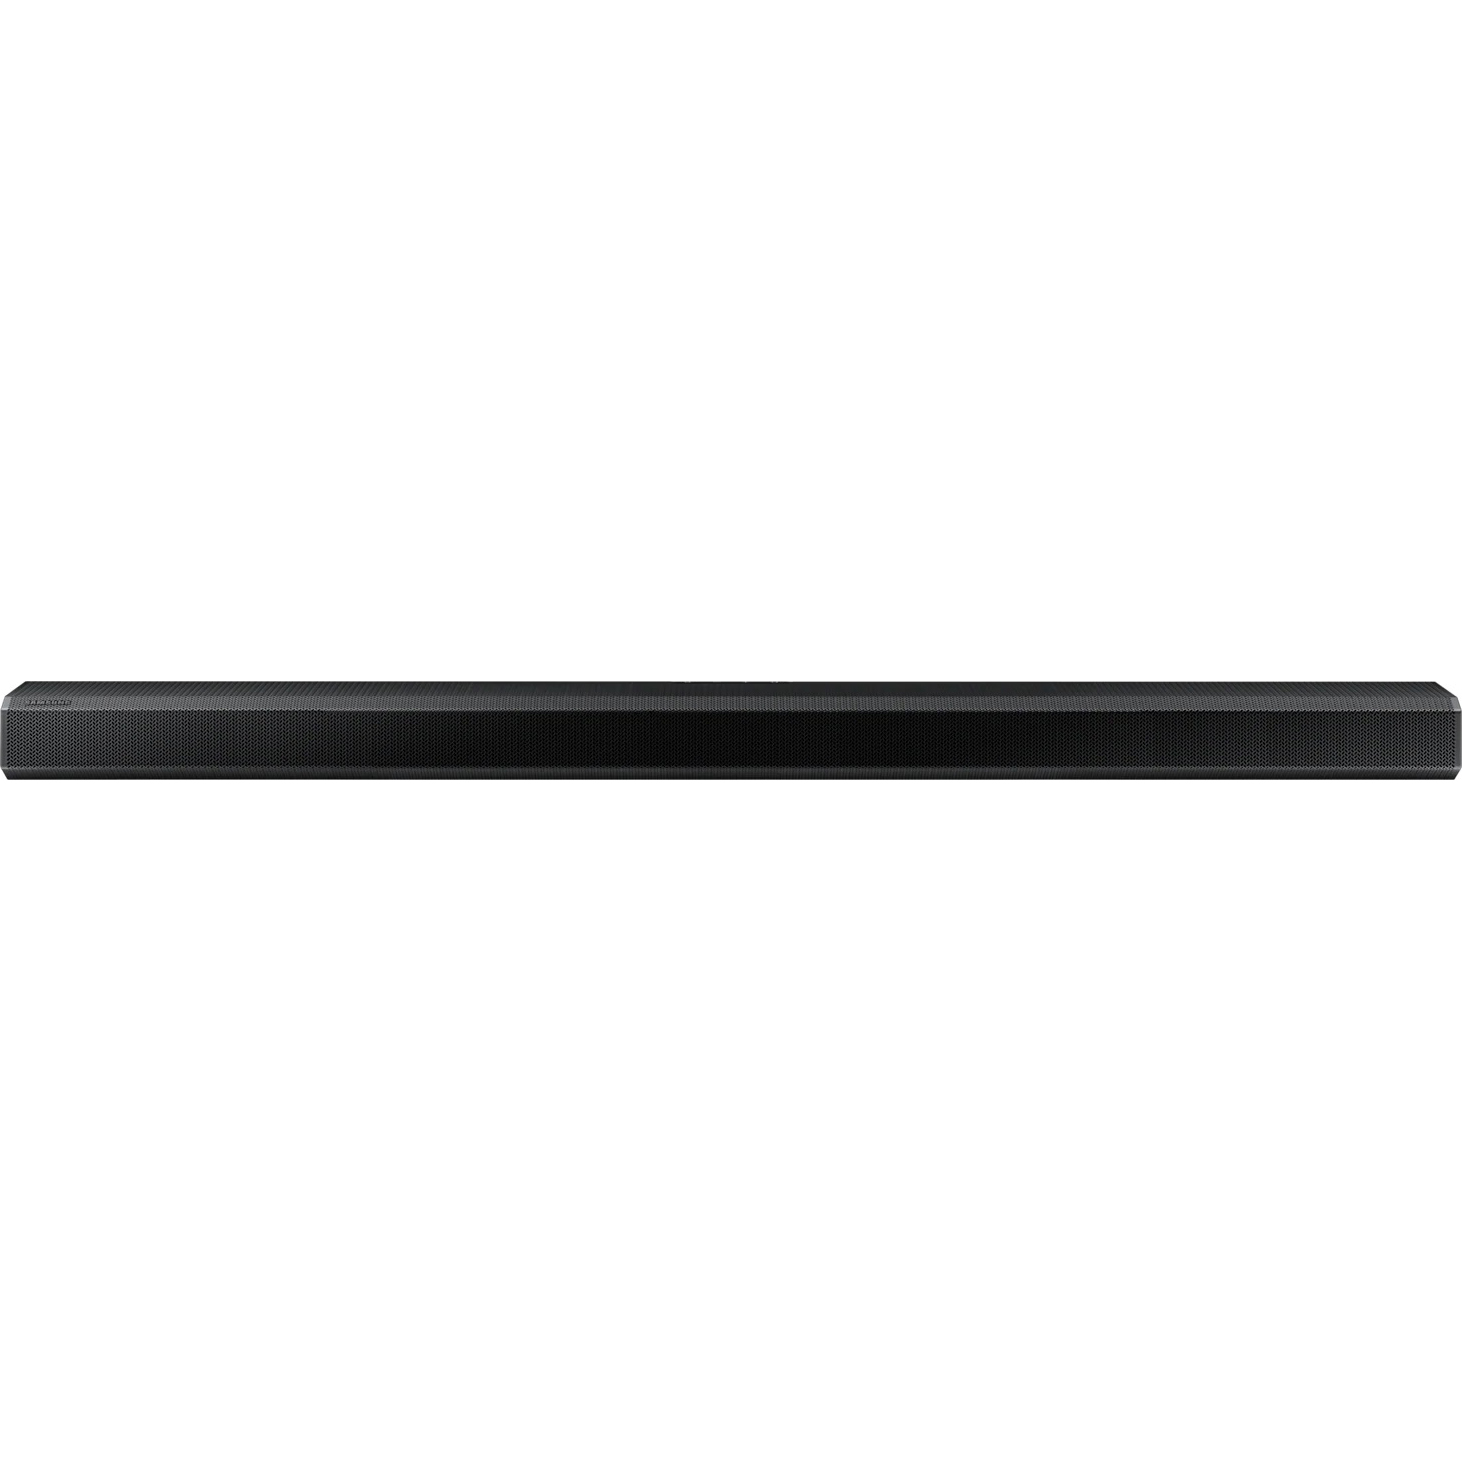 Саундбар Samsung HW-Q800T, цвет черный, размер 40,3*20,5*40,3 см - фото 3